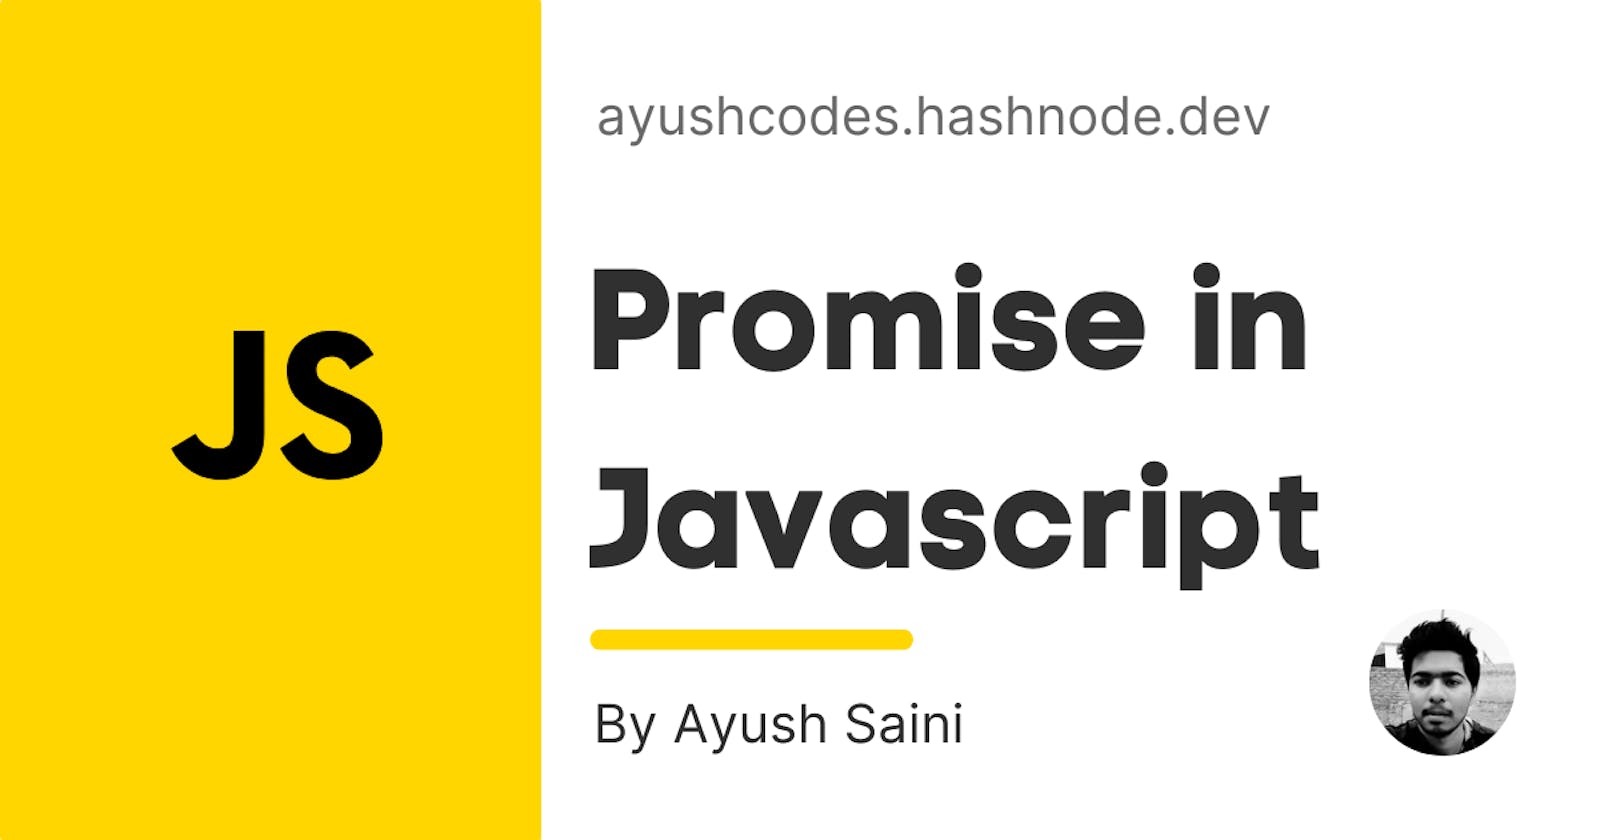 Promise in Javascript